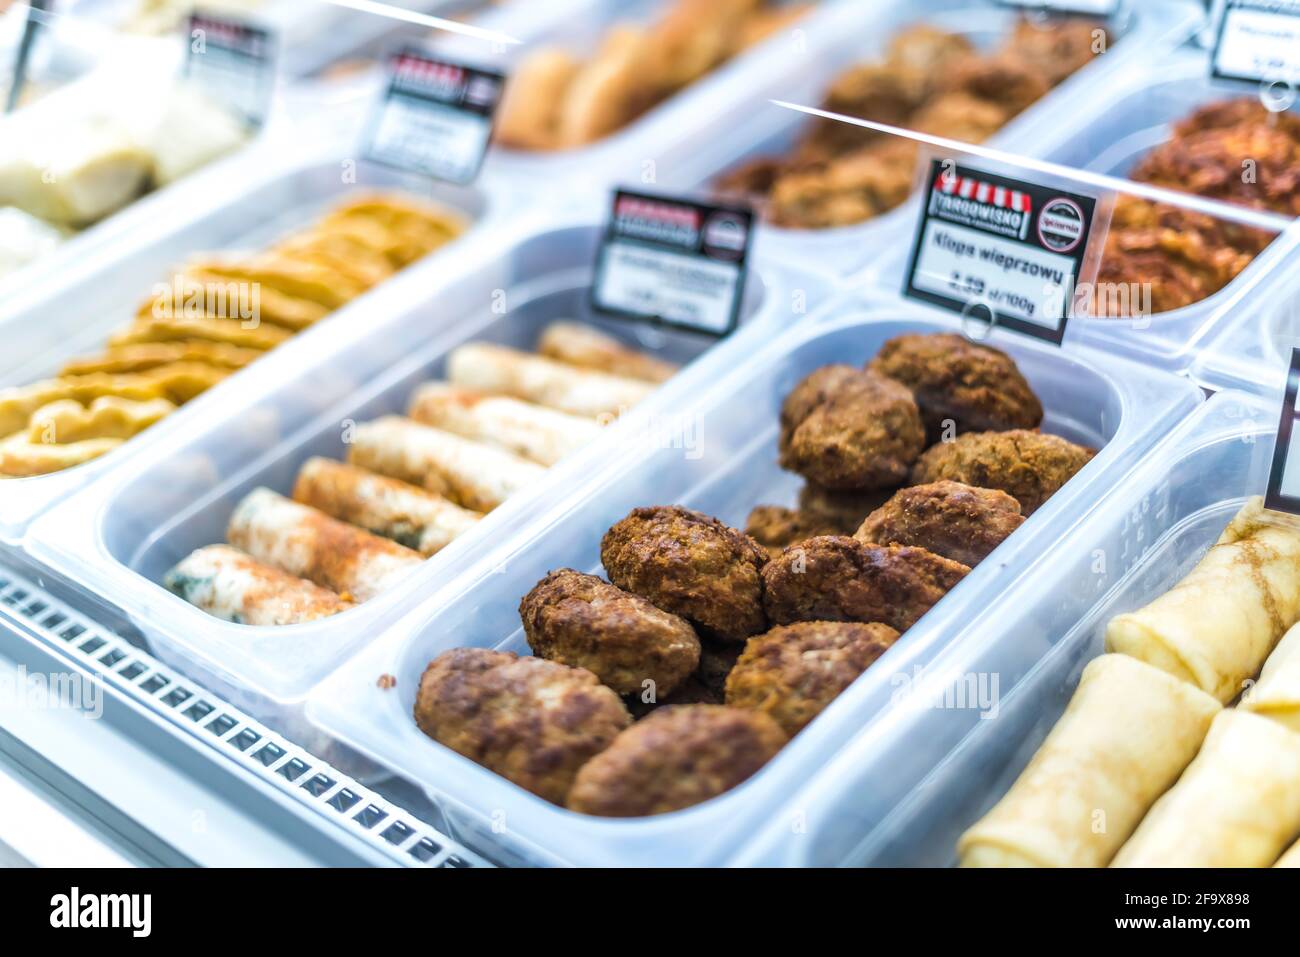 POZNAN, POL - APR 13, 2021: Verzehrfertige Lebensmittel, die in einem Supermarkt zum Verkauf stehen Stockfoto